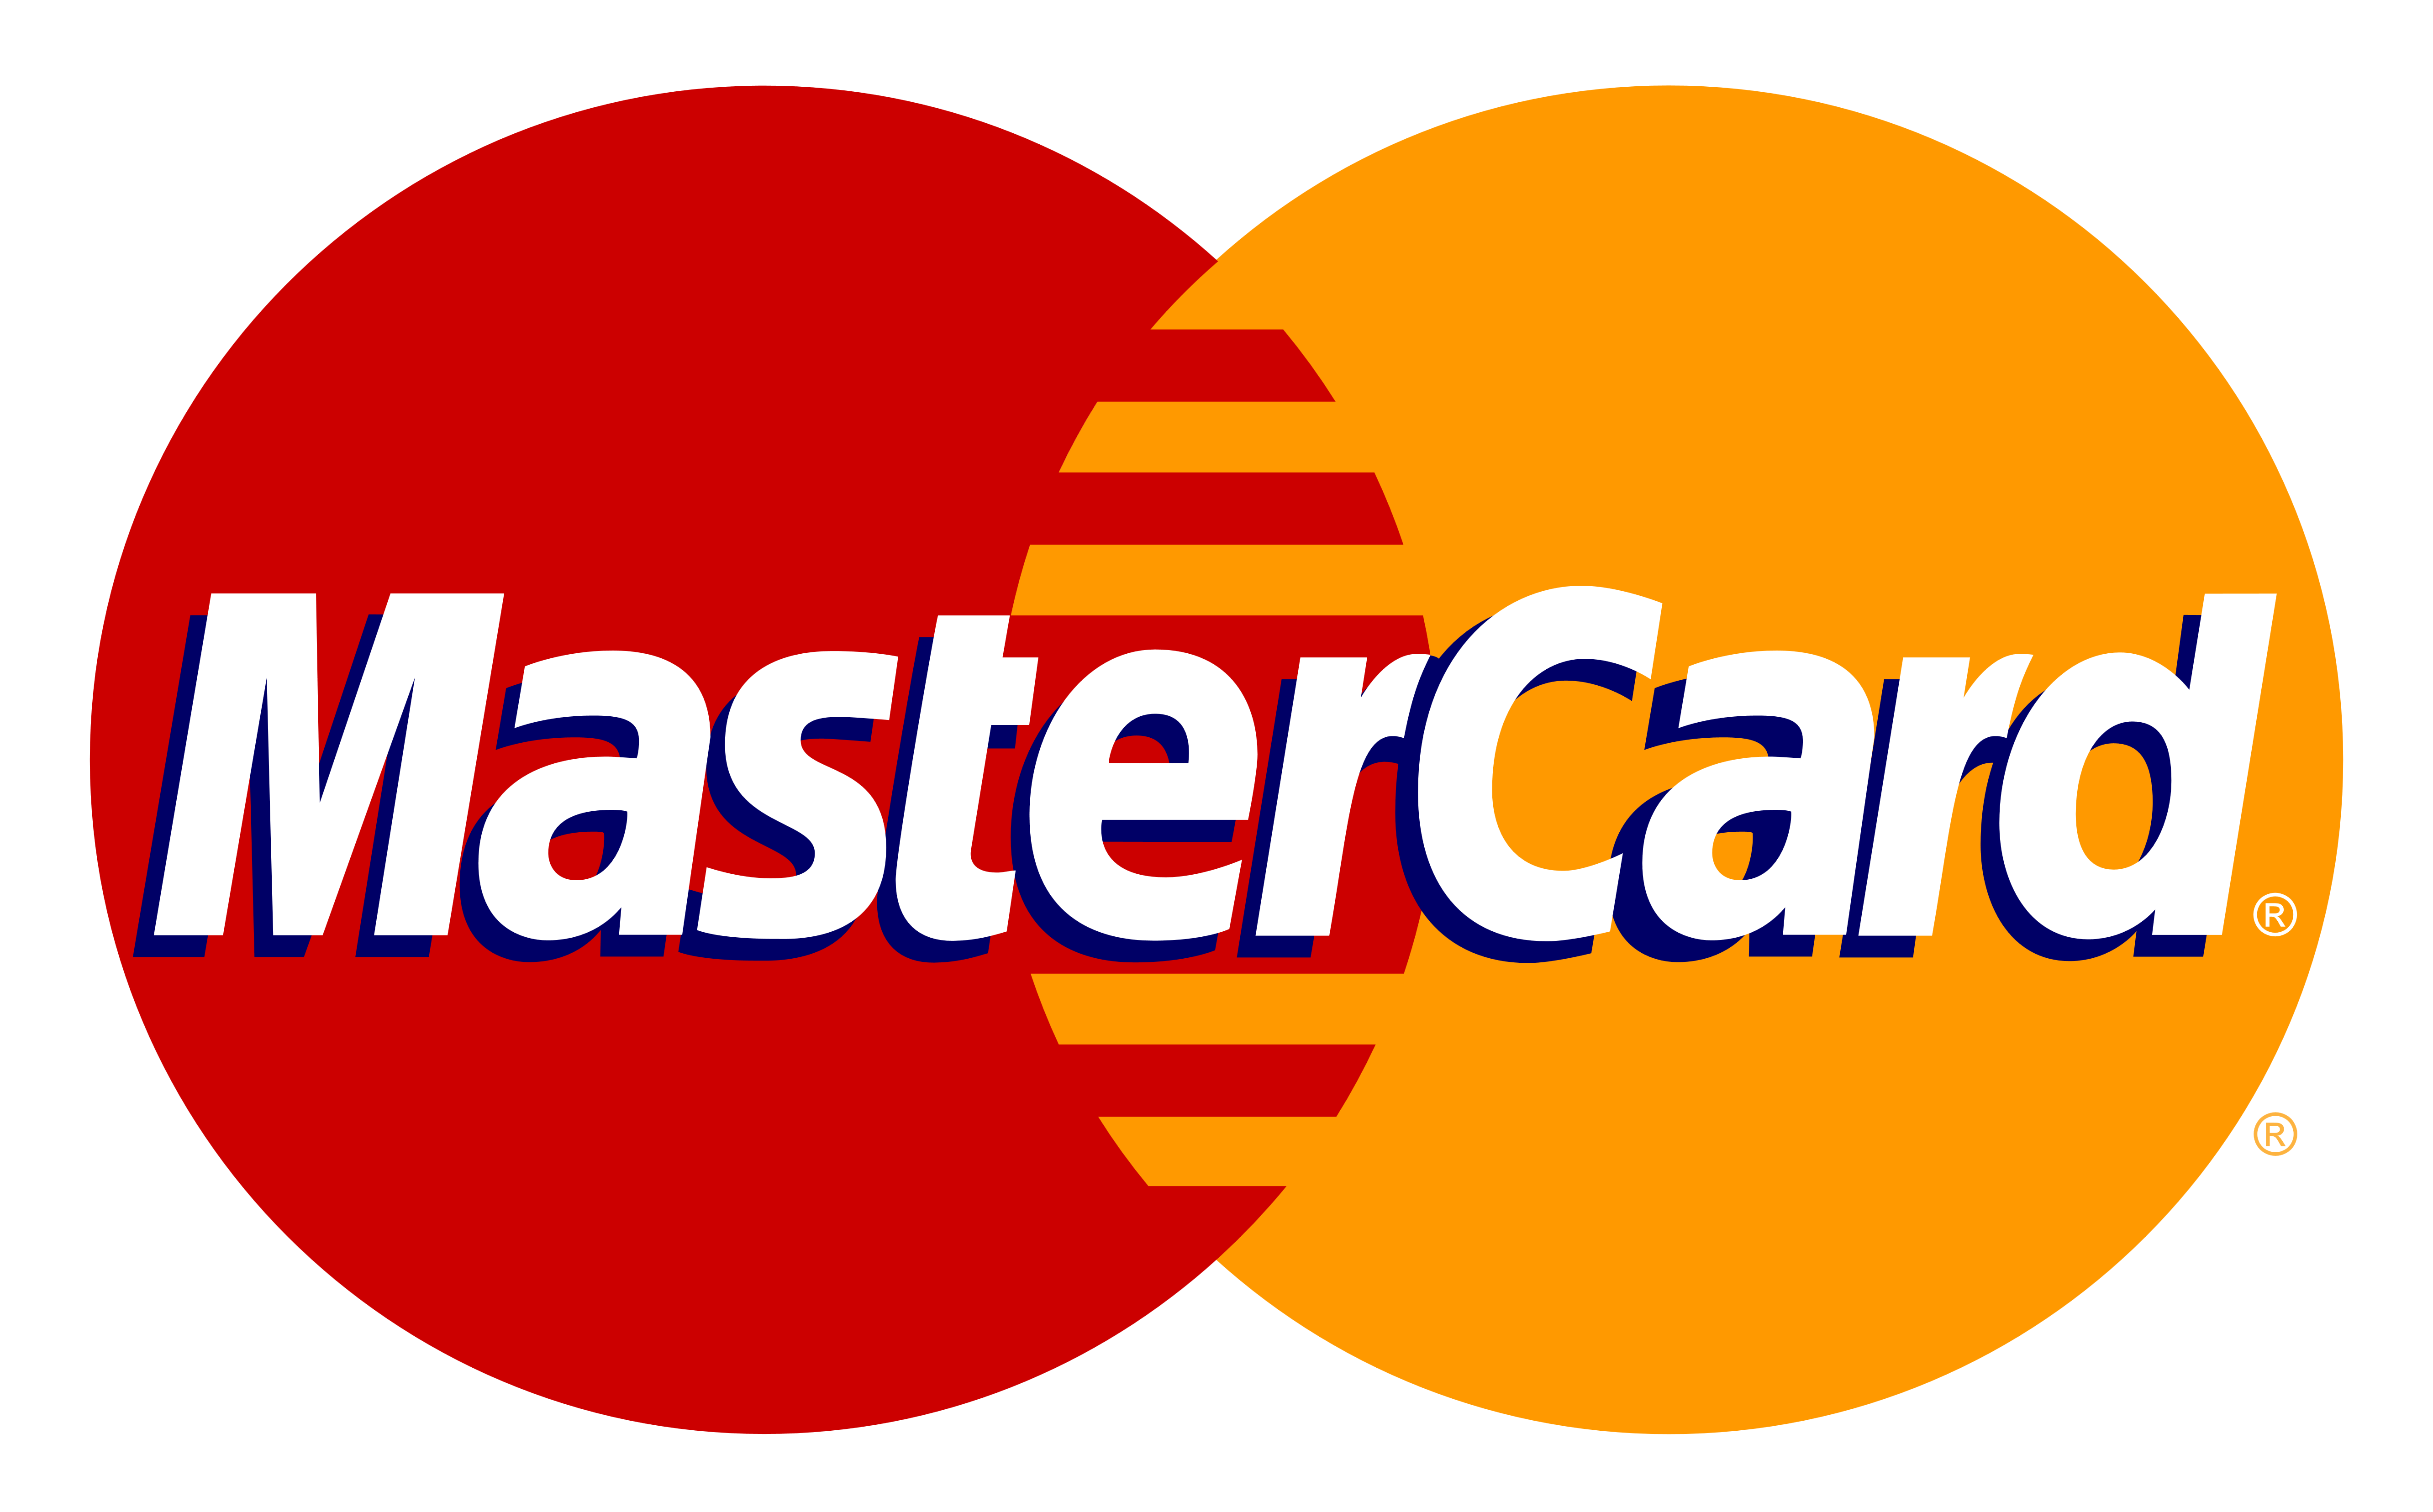 MasterCard Logo - MasterCard Logo PNG Image - PurePNG | Free transparent CC0 PNG Image ...